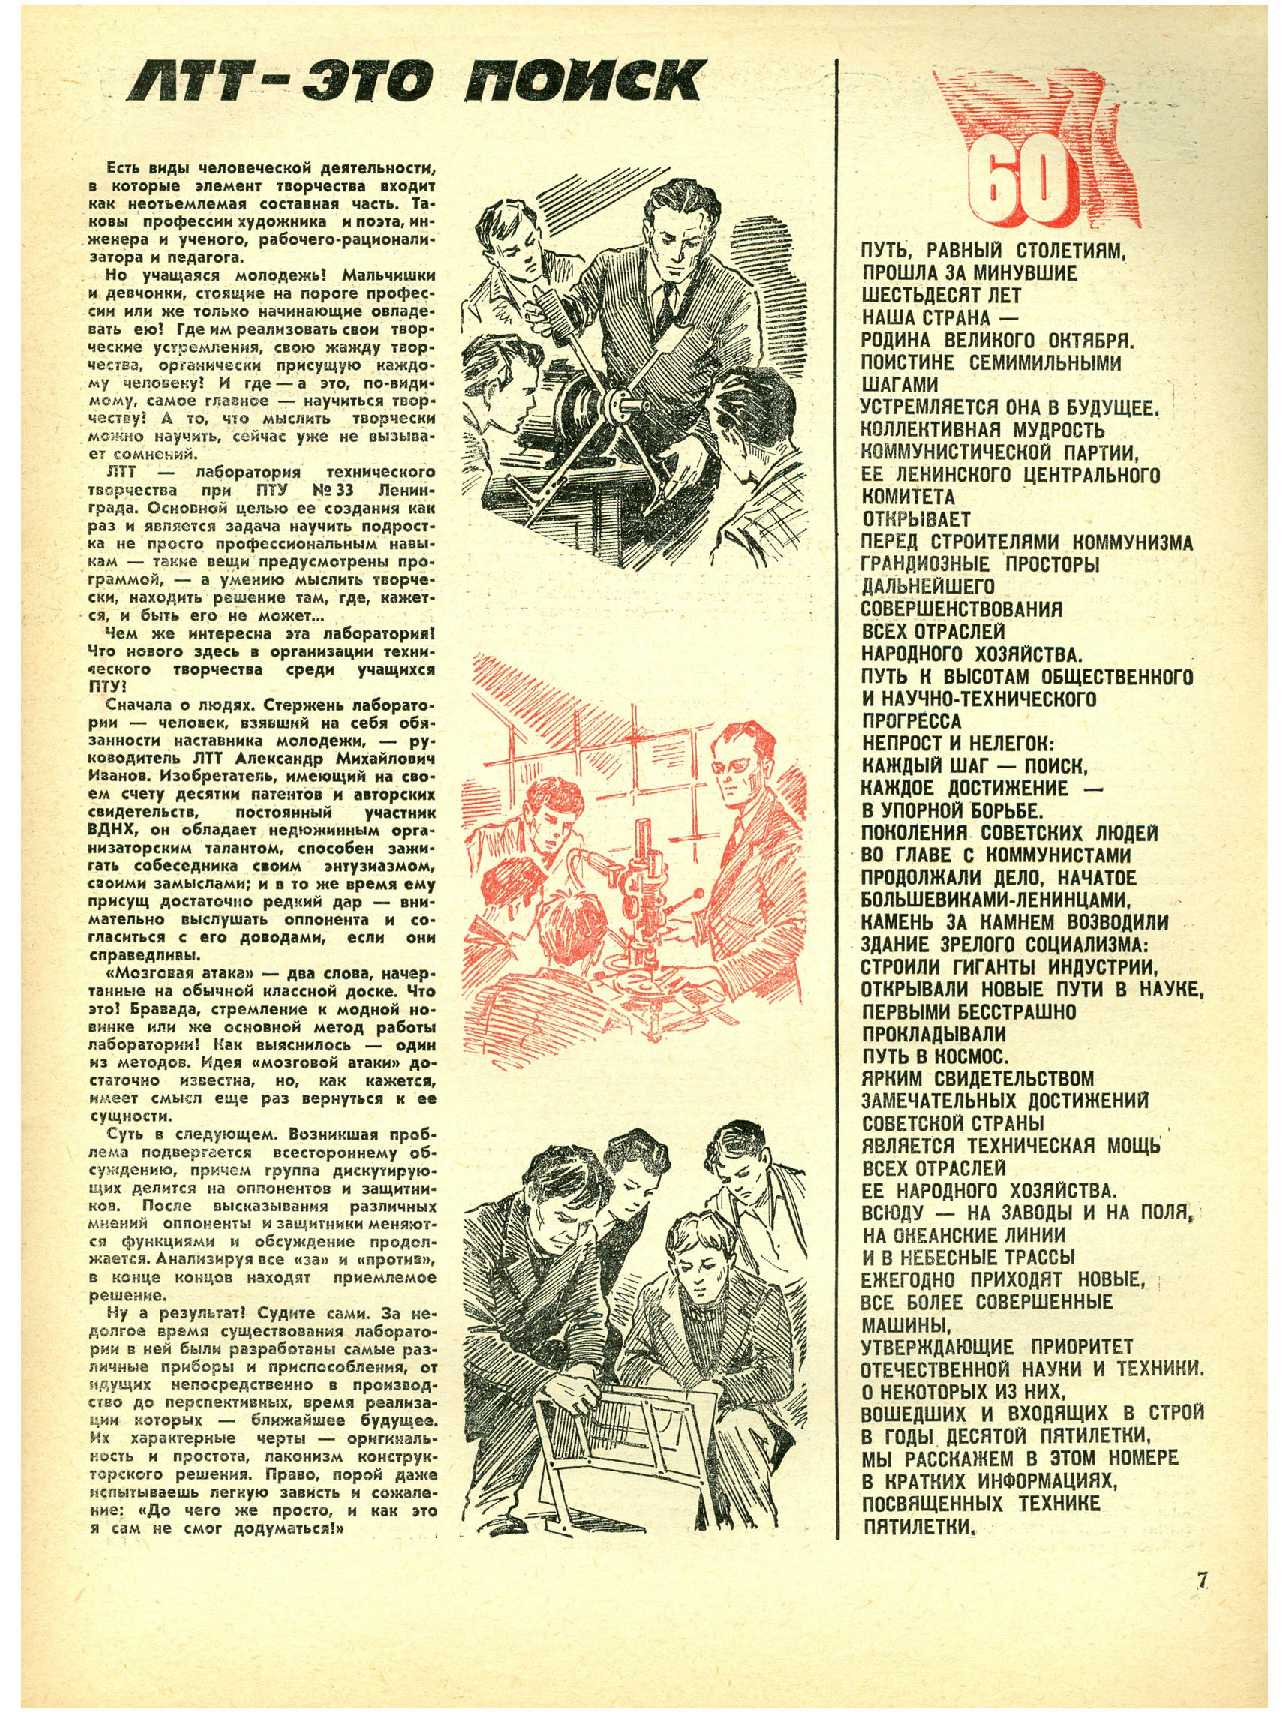 МК 11, 1977, 7 c.